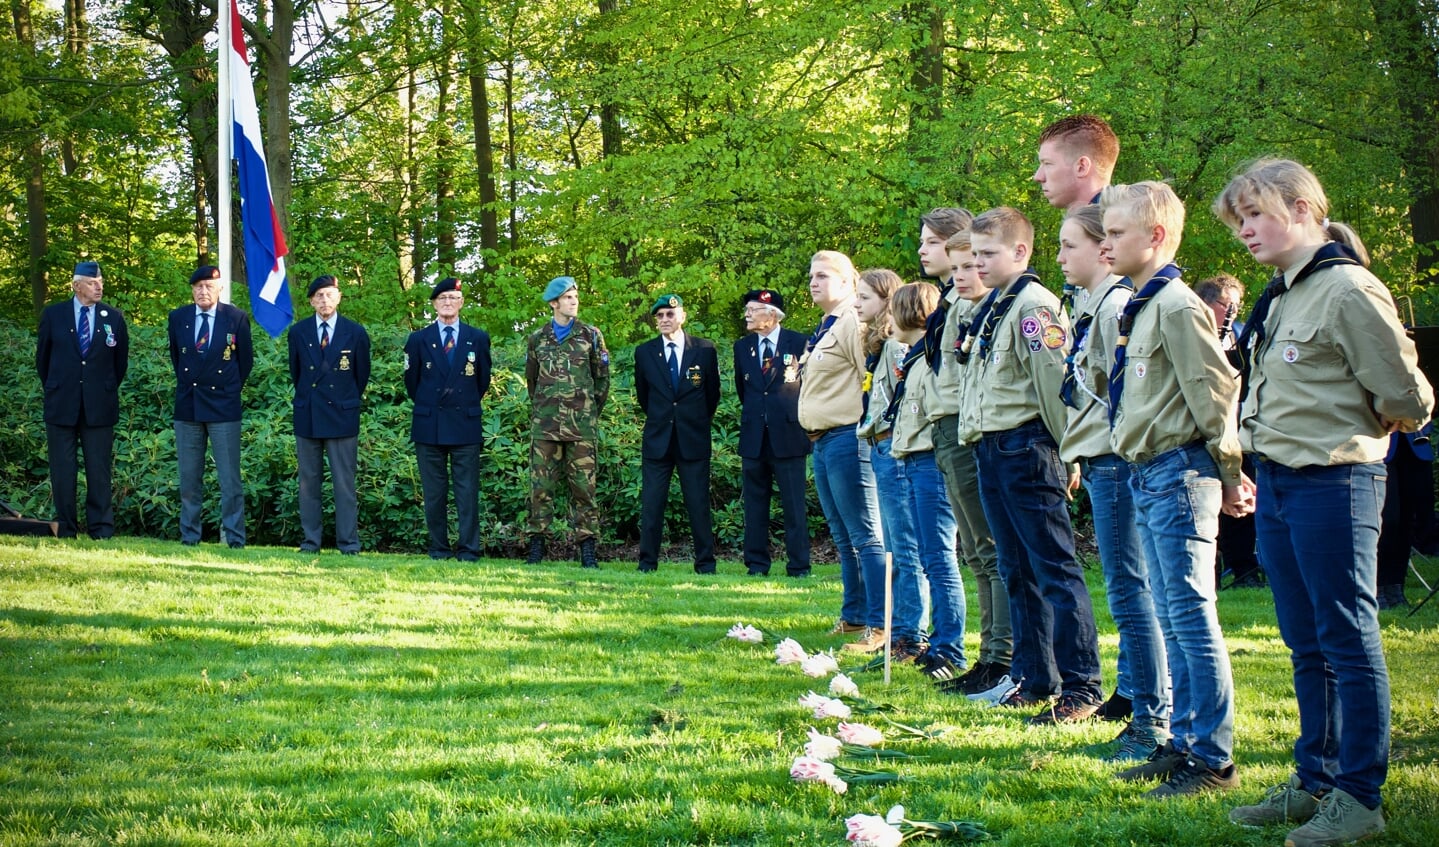 Veteranen en scouts tijdens de Dodenherdenking.